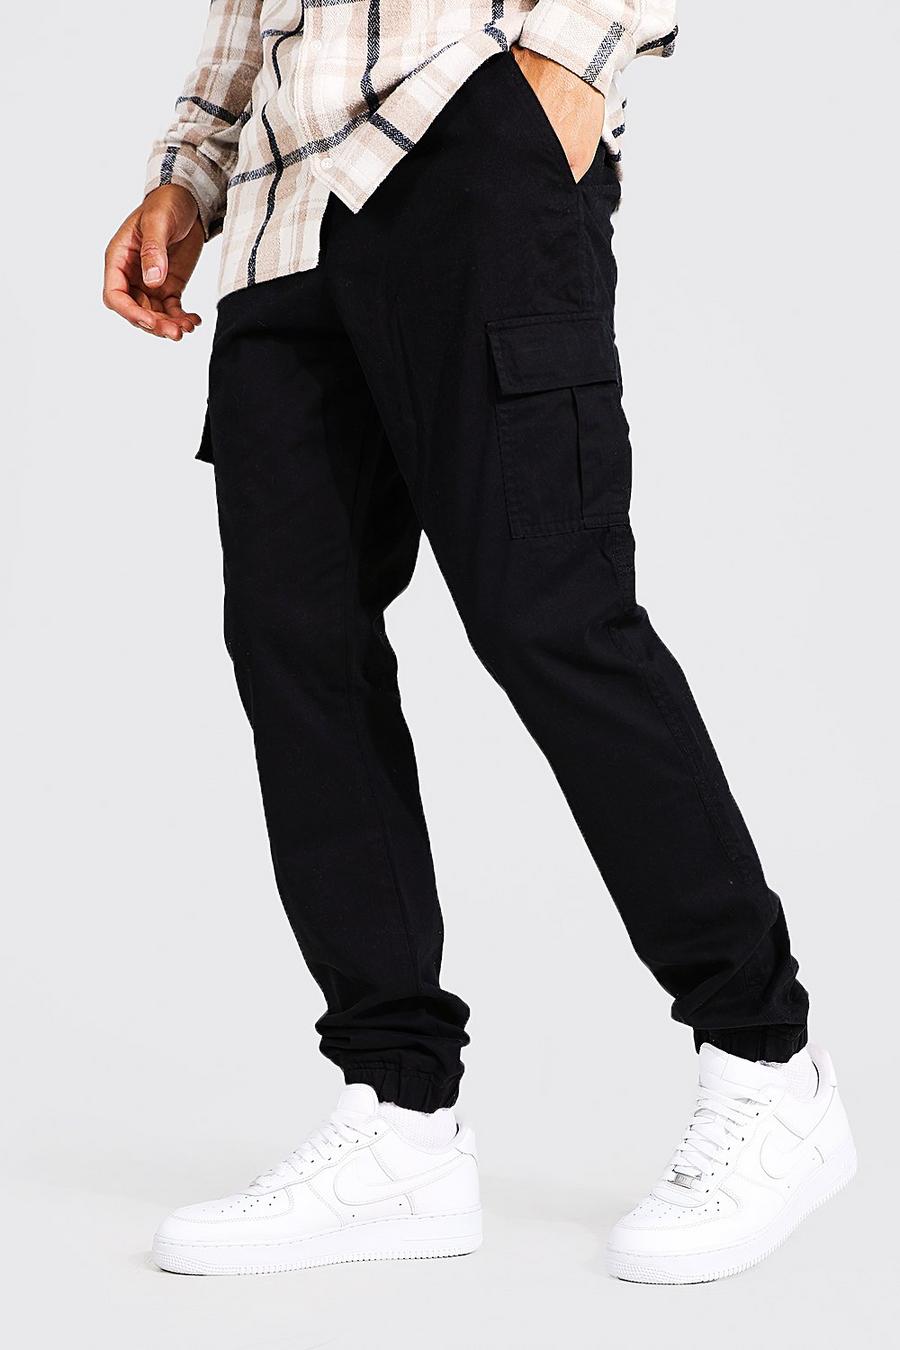 https://media.boohoo.com/i/boohoo/amm01991_black_xl/male-black-tall-regular-fit-cargo-trousers/?w=900&qlt=default&fmt.jp2.qlt=70&fmt=auto&sm=fit